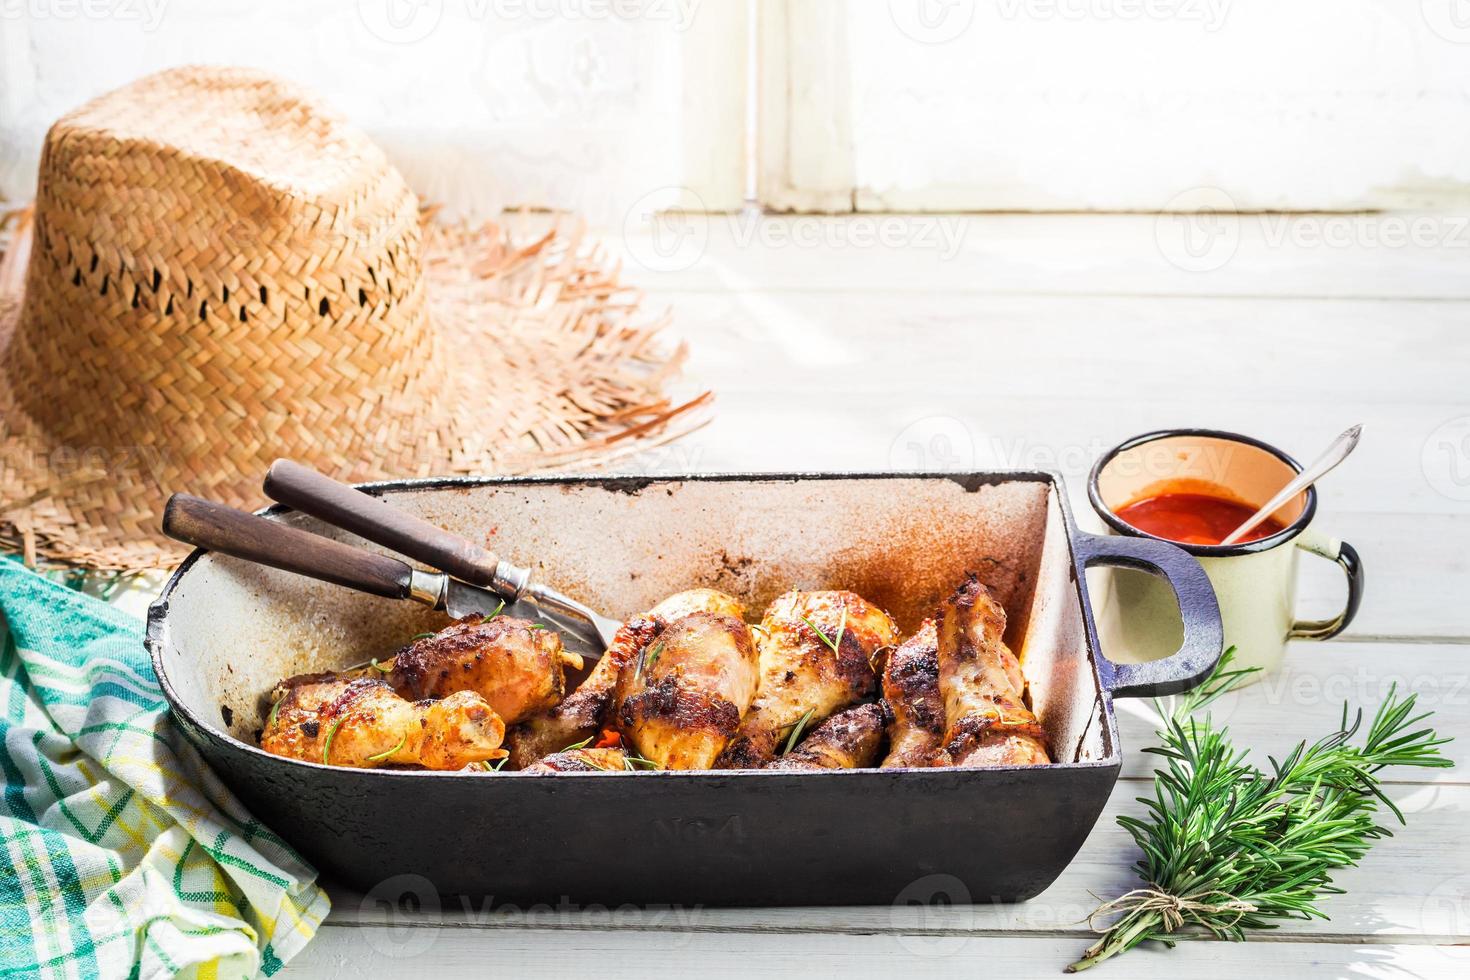 cuisses de poulet chaud aux herbes et sauce dans la cuisine d'été photo